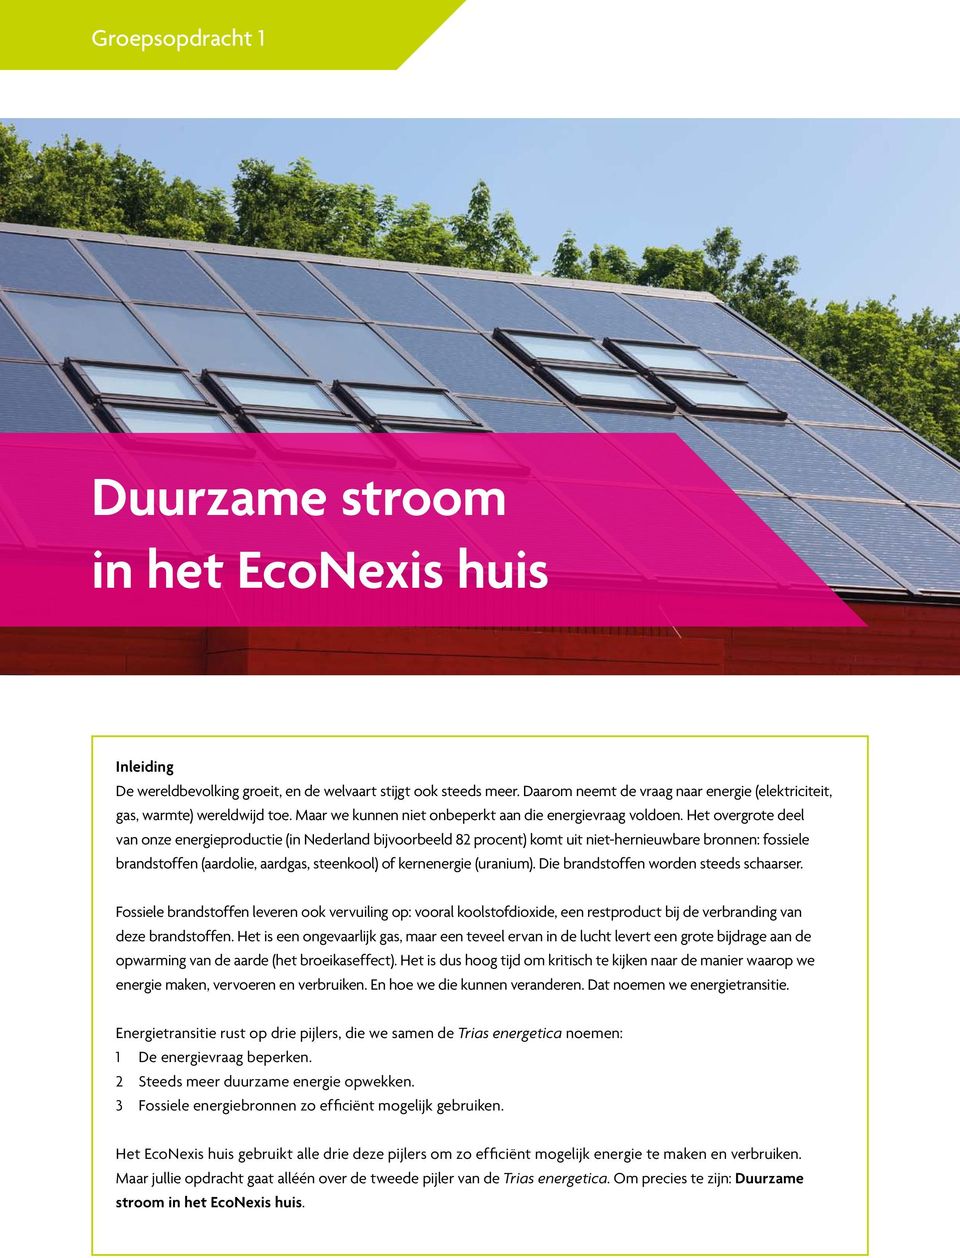 Het overgrote deel van onze energieproductie (in Nederland bijvoorbeeld 82 procent) komt uit niet-hernieuwbare bronnen: fossiele brandstoffen (aardolie, aardgas, steenkool) of kernenergie (uranium).